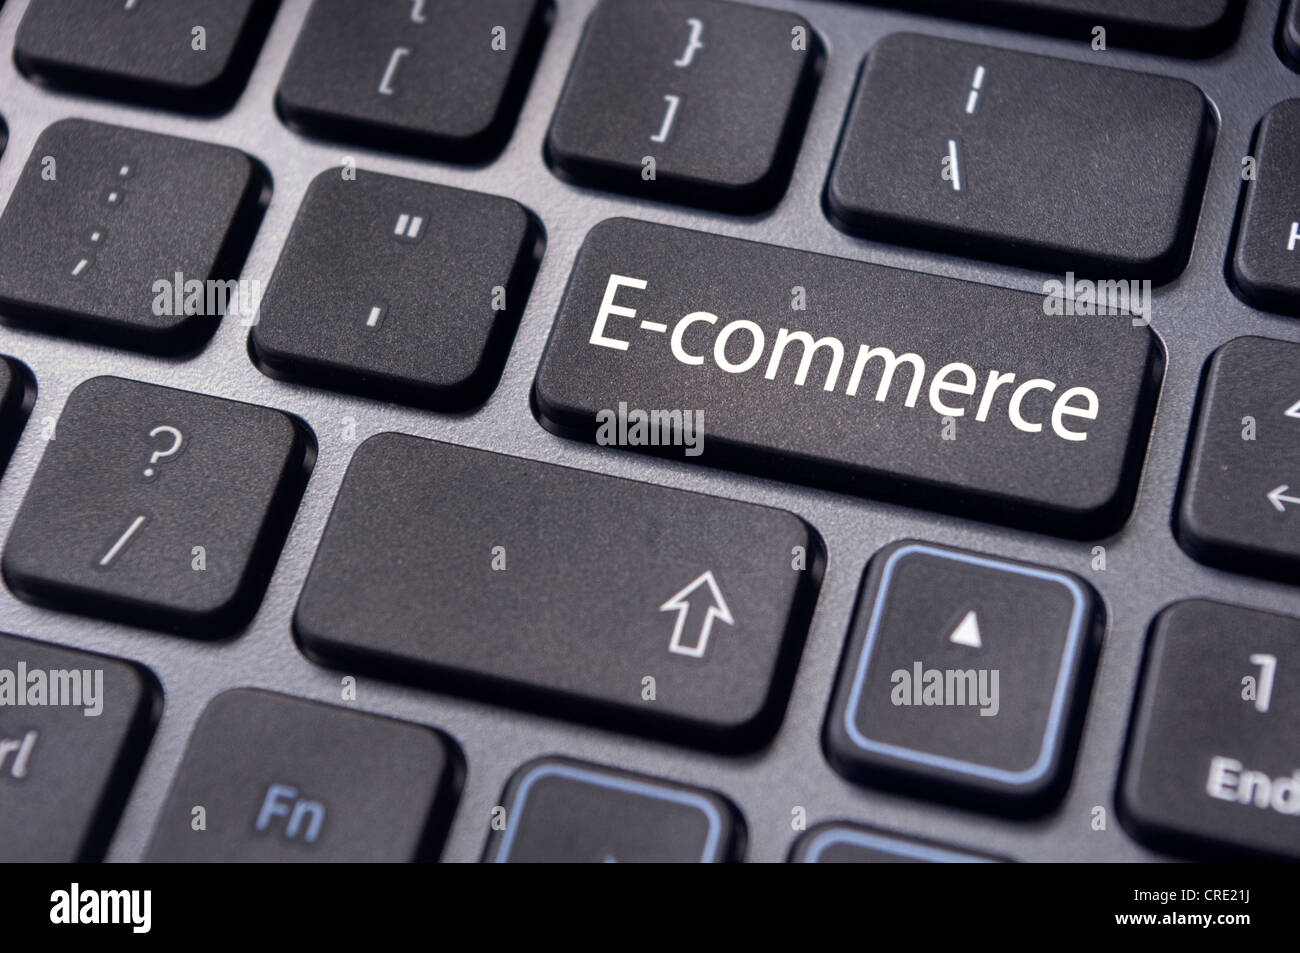 El concepto de e-commerce o comercio electrónico, comercio electrónico, con un mensaje en el teclado del ordenador. Foto de stock